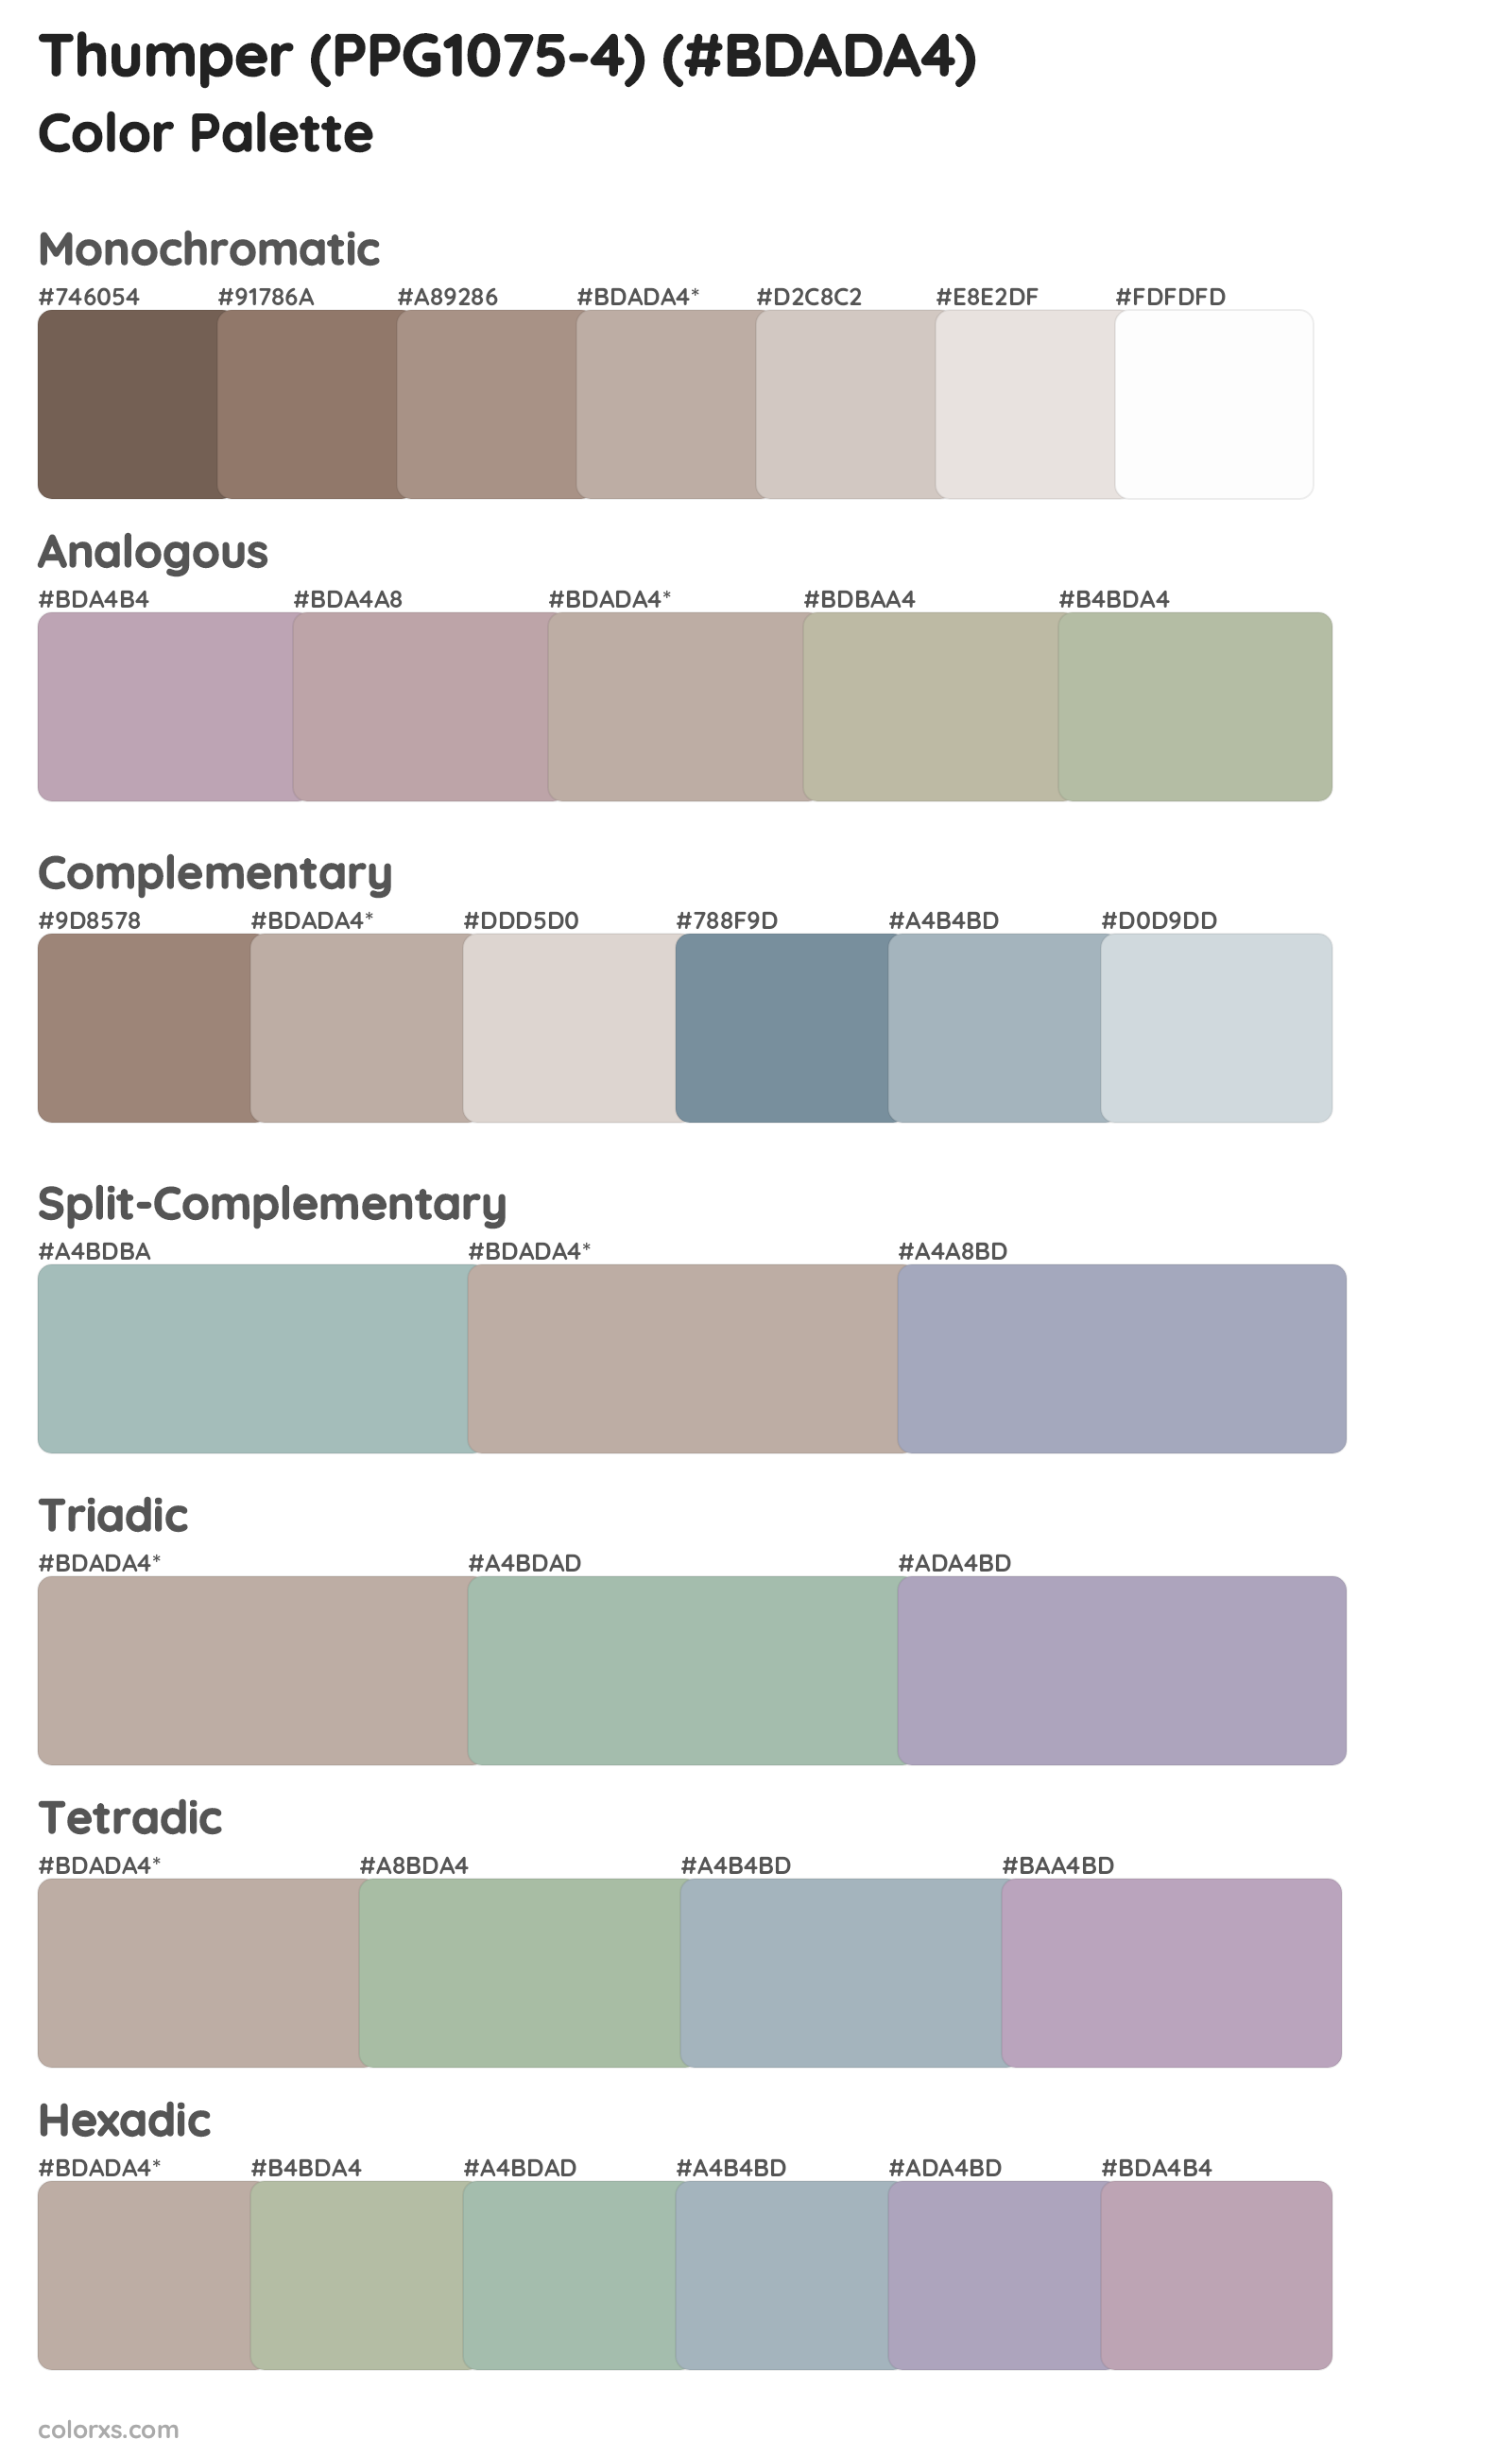 Thumper (PPG1075-4) Color Scheme Palettes